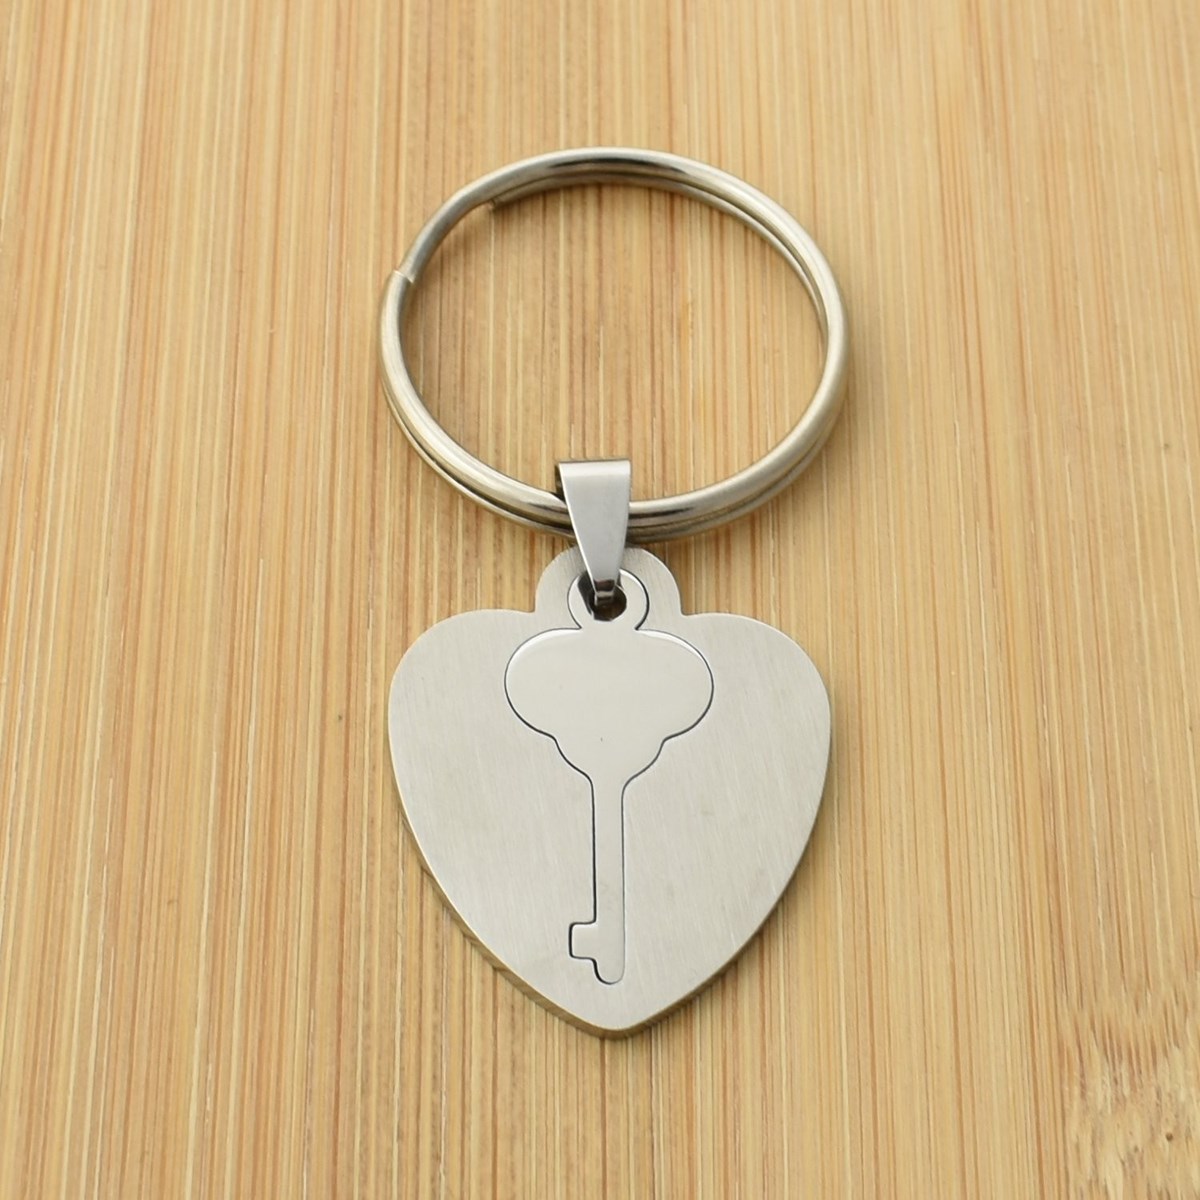 Porte-clés coeur clé plaque amovible acier inoxydable - vue 2